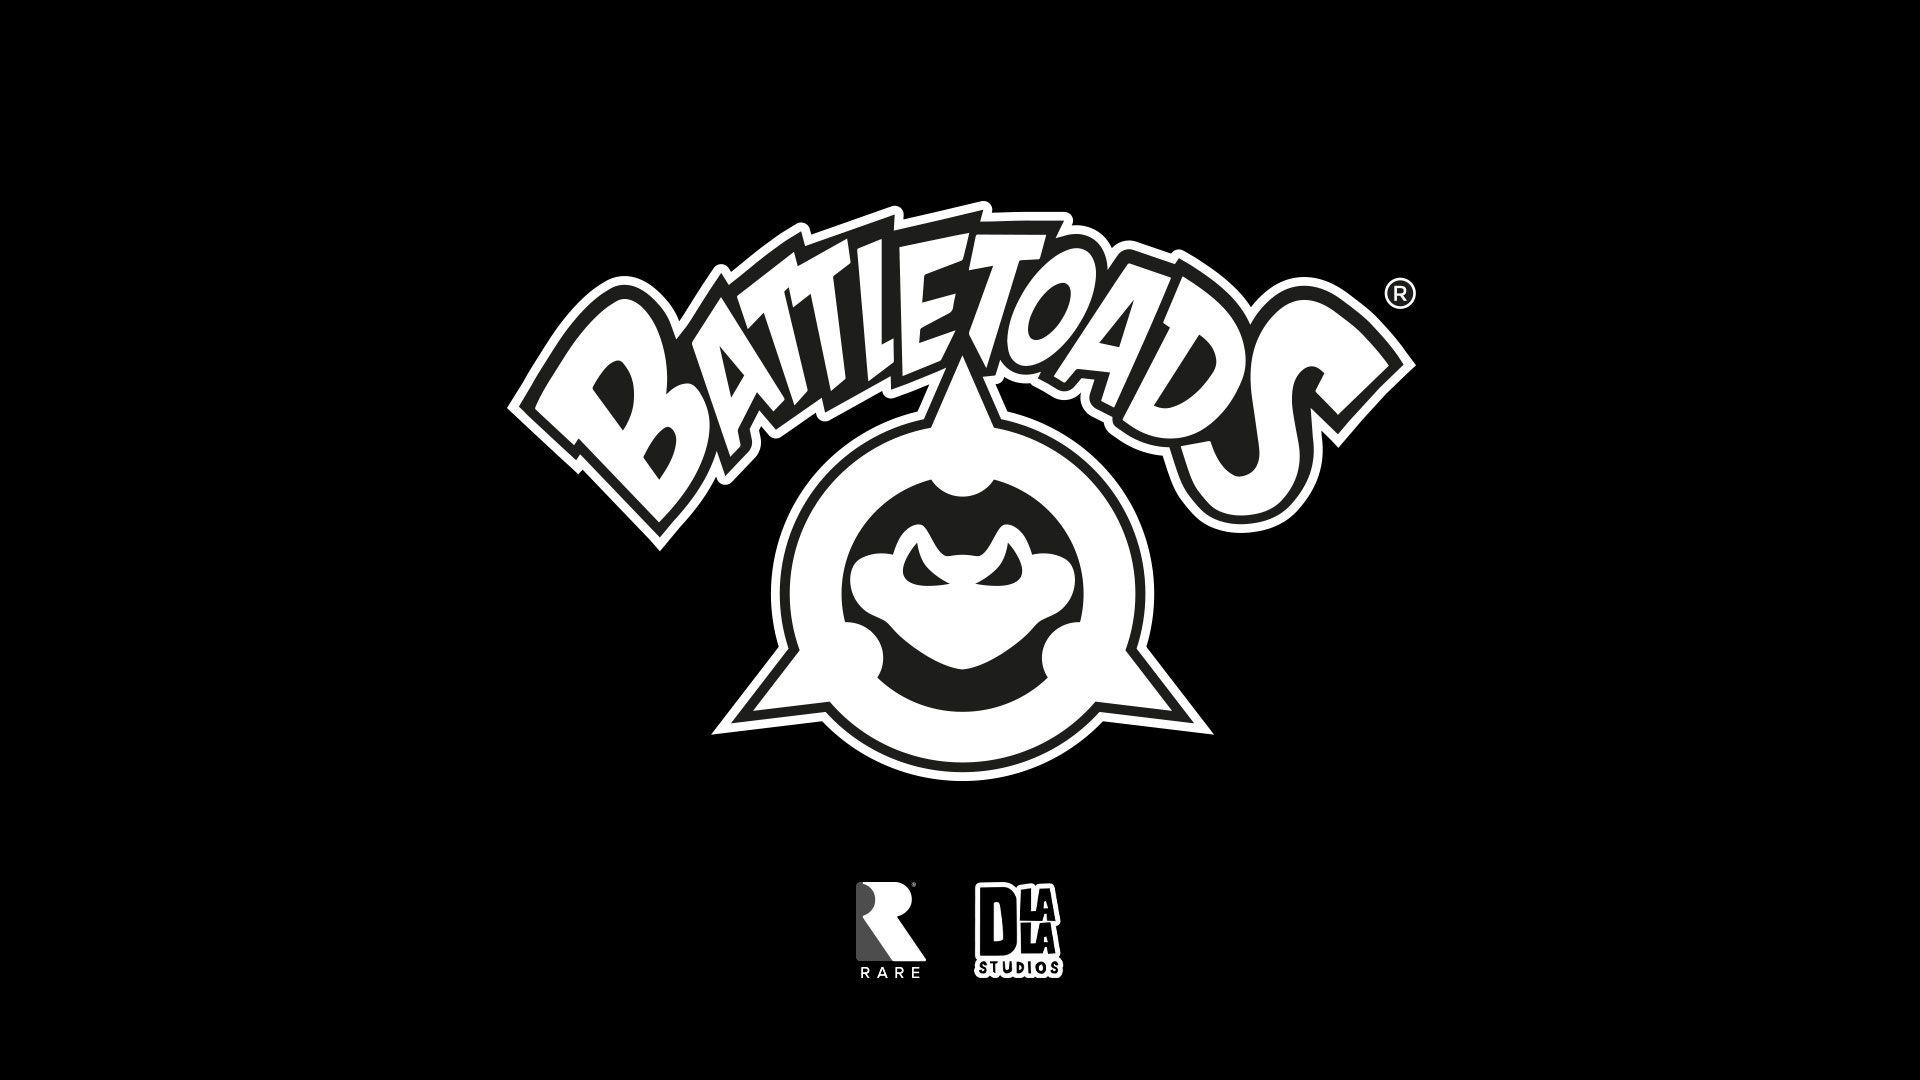 Battletoads Logo - Battletoads for Xbox One | Xbox